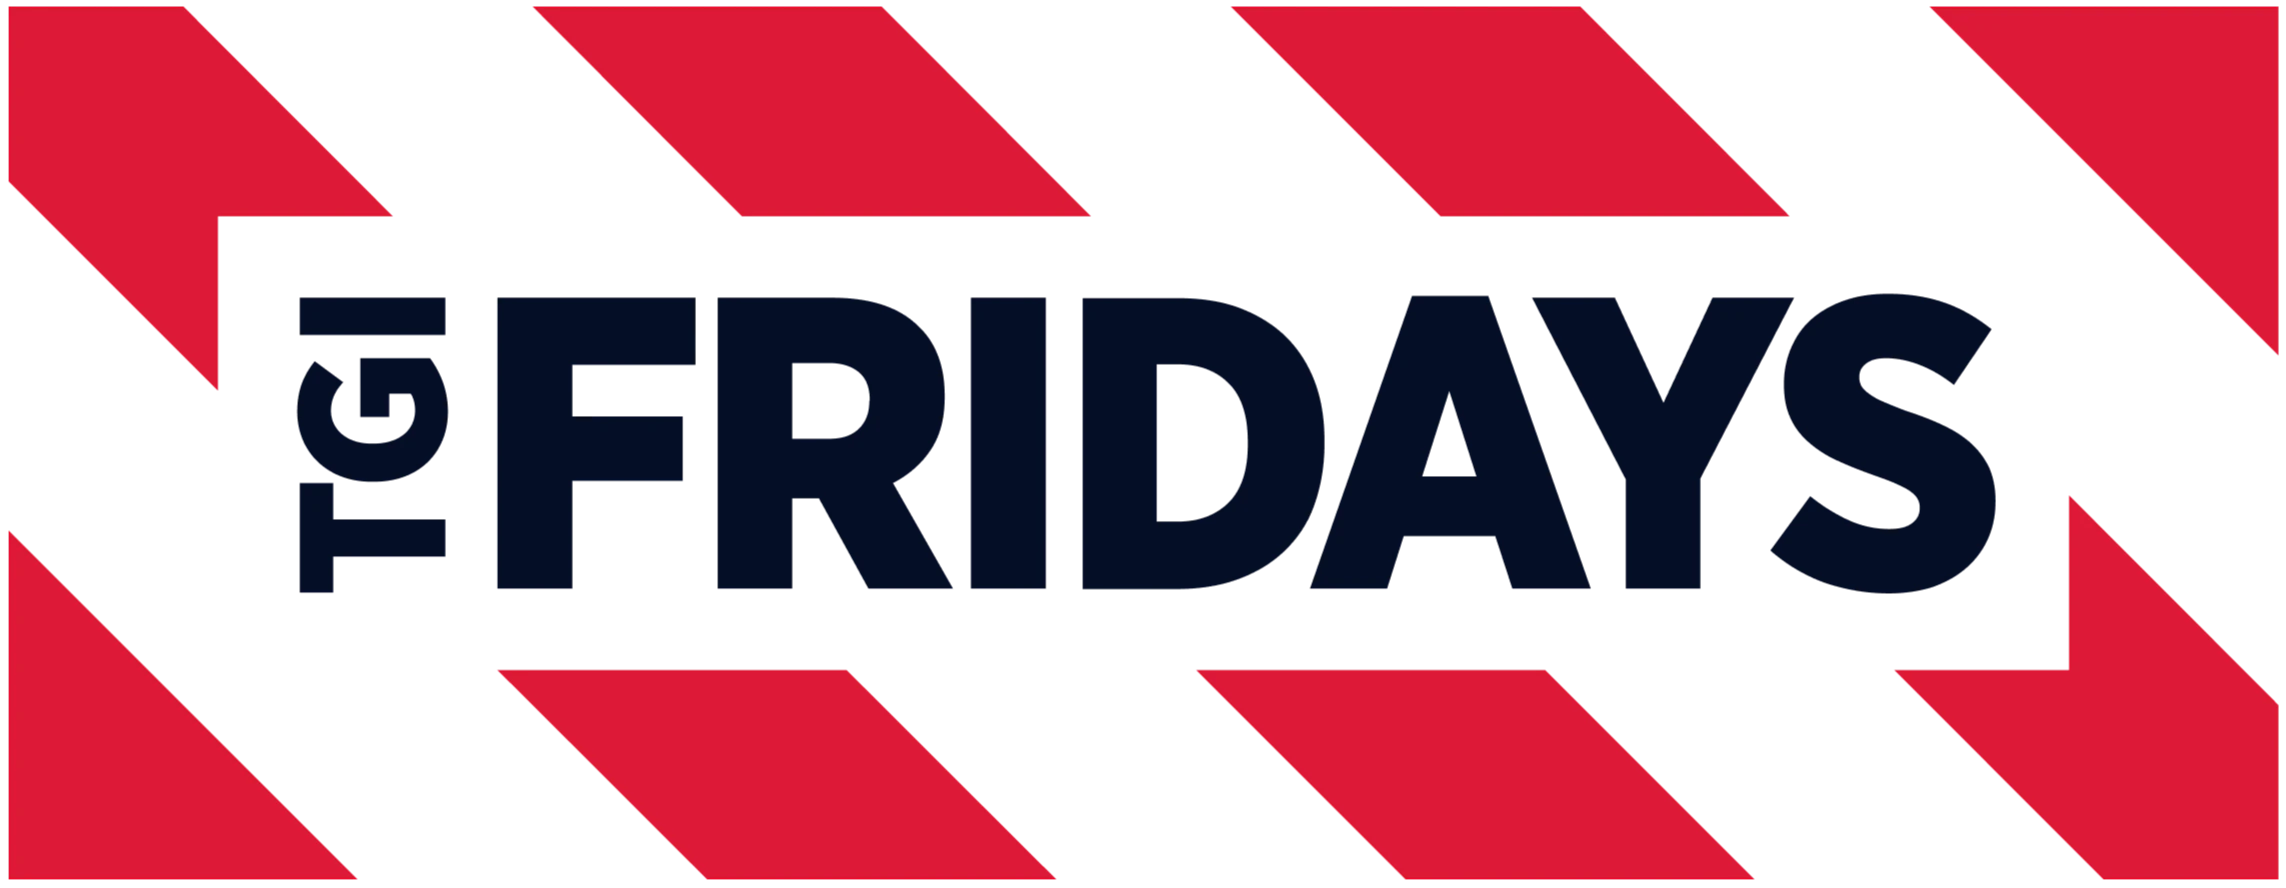 Logo TGI Fridays